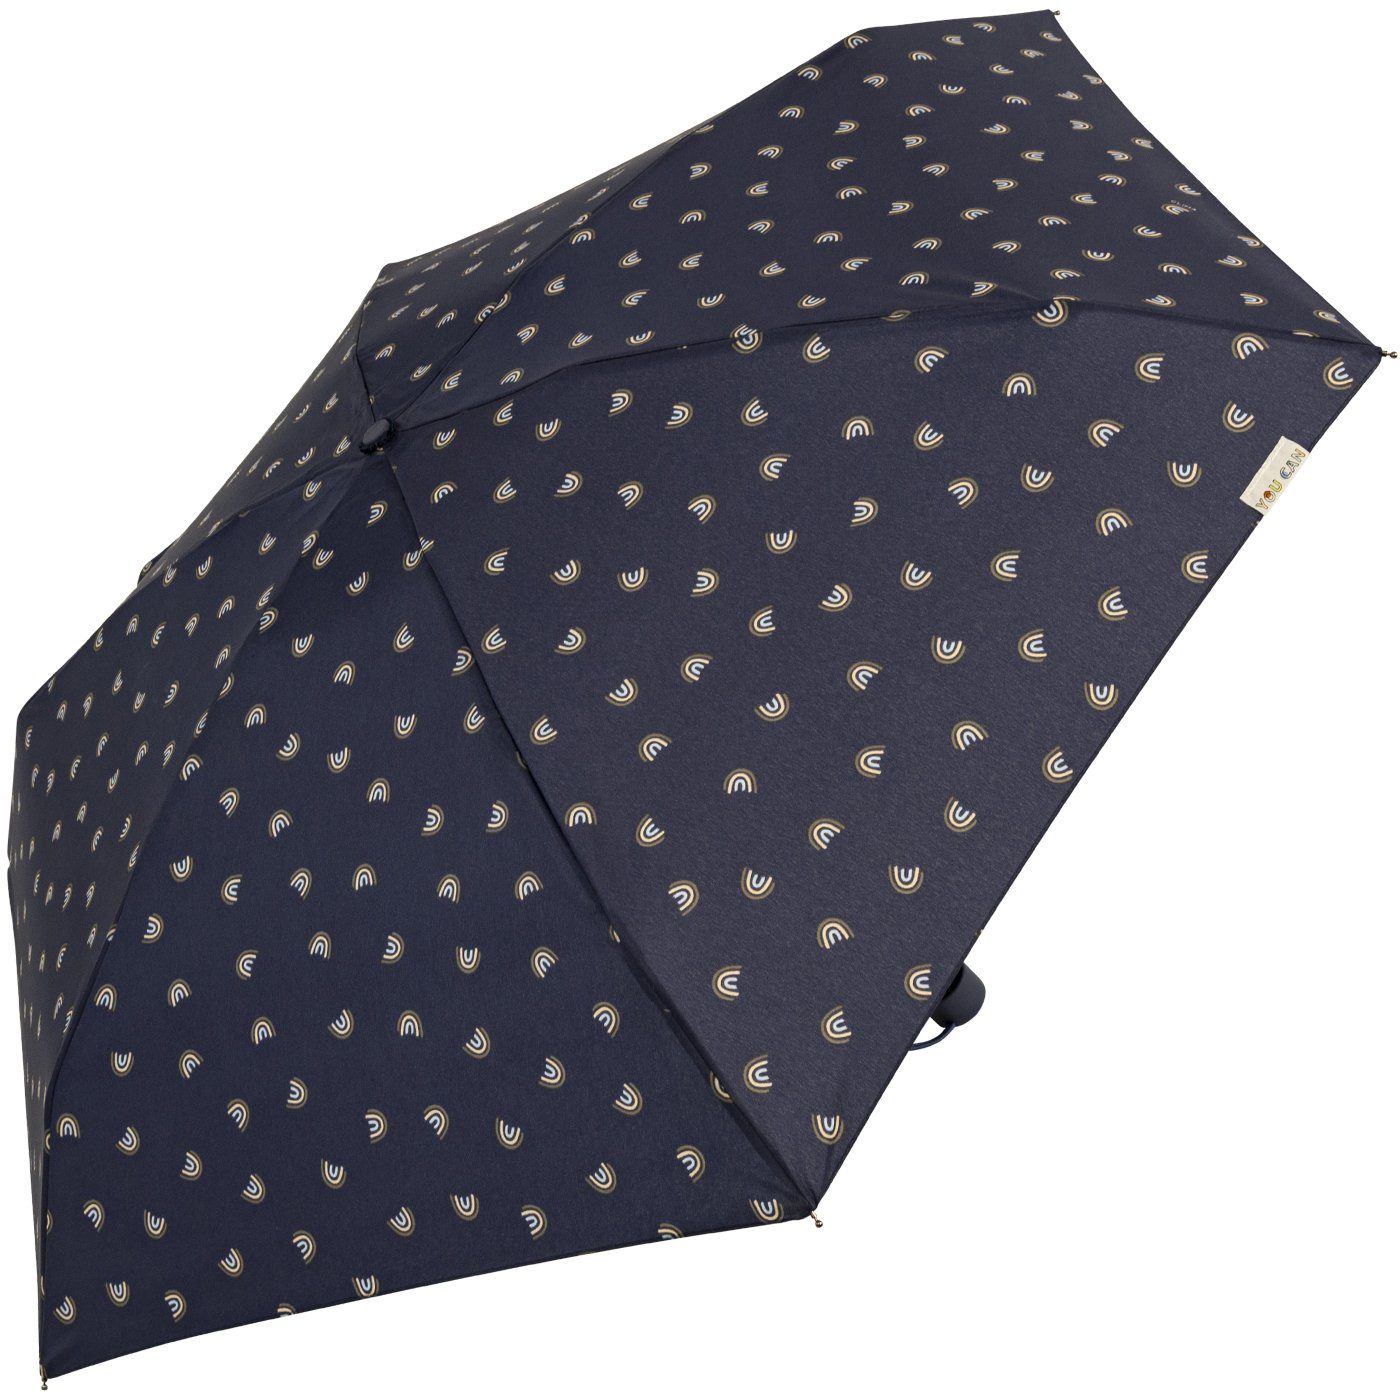 Farben Damen-Regenschirm, kompakt, mit stabil, mit bisetti Handöffner, navy gedeckte klein, Bögen-Motiv Taschenregenschirm -